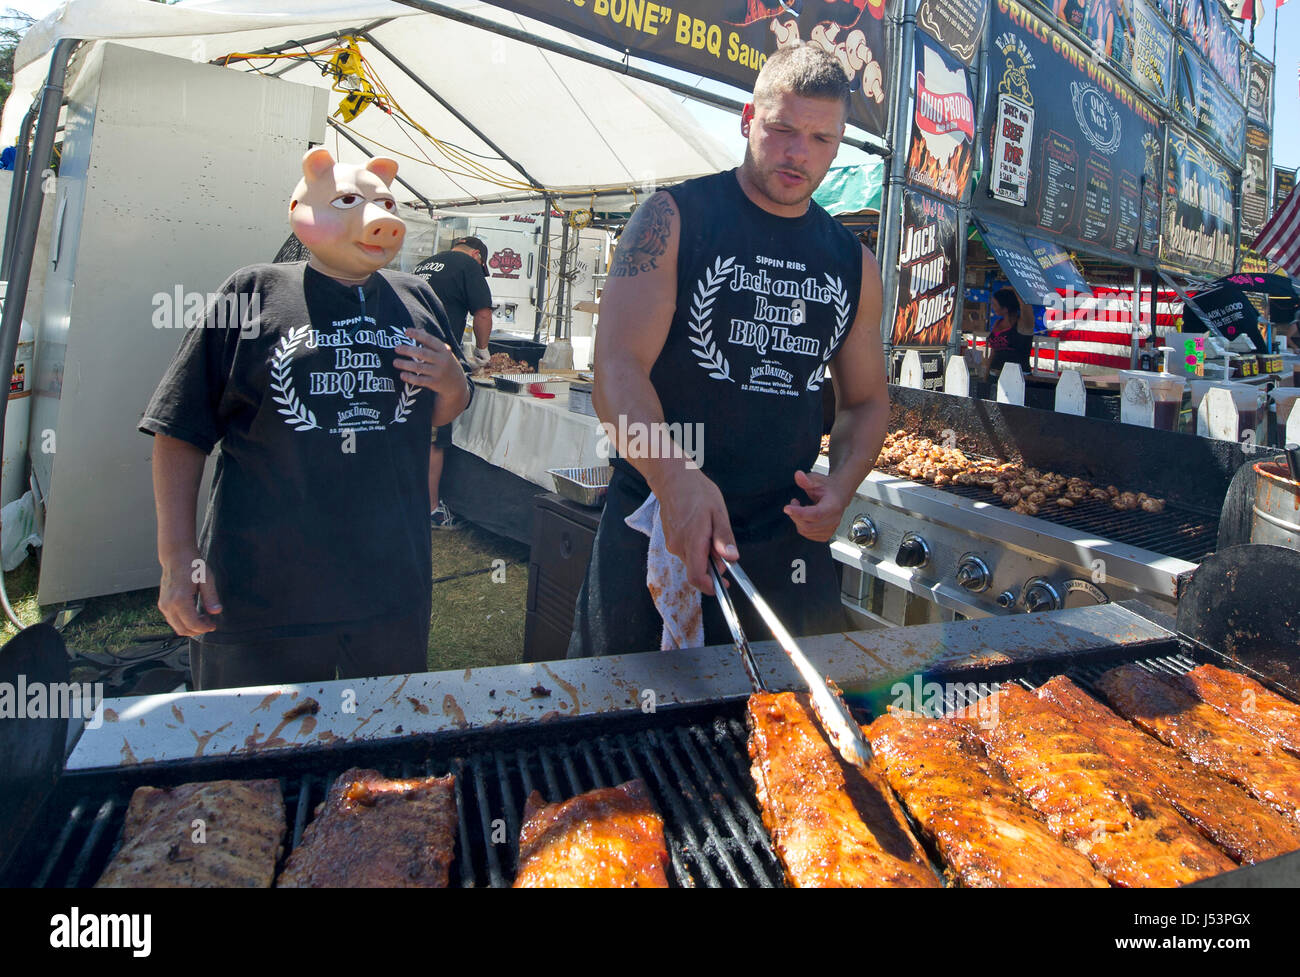 Jack sur l'os de l'équipe côtes de porc barbecue gril pendant ribfest de Toronto. Le festival a attiré des dizaines de Torontois à la Centennial Park duri motifs Banque D'Images